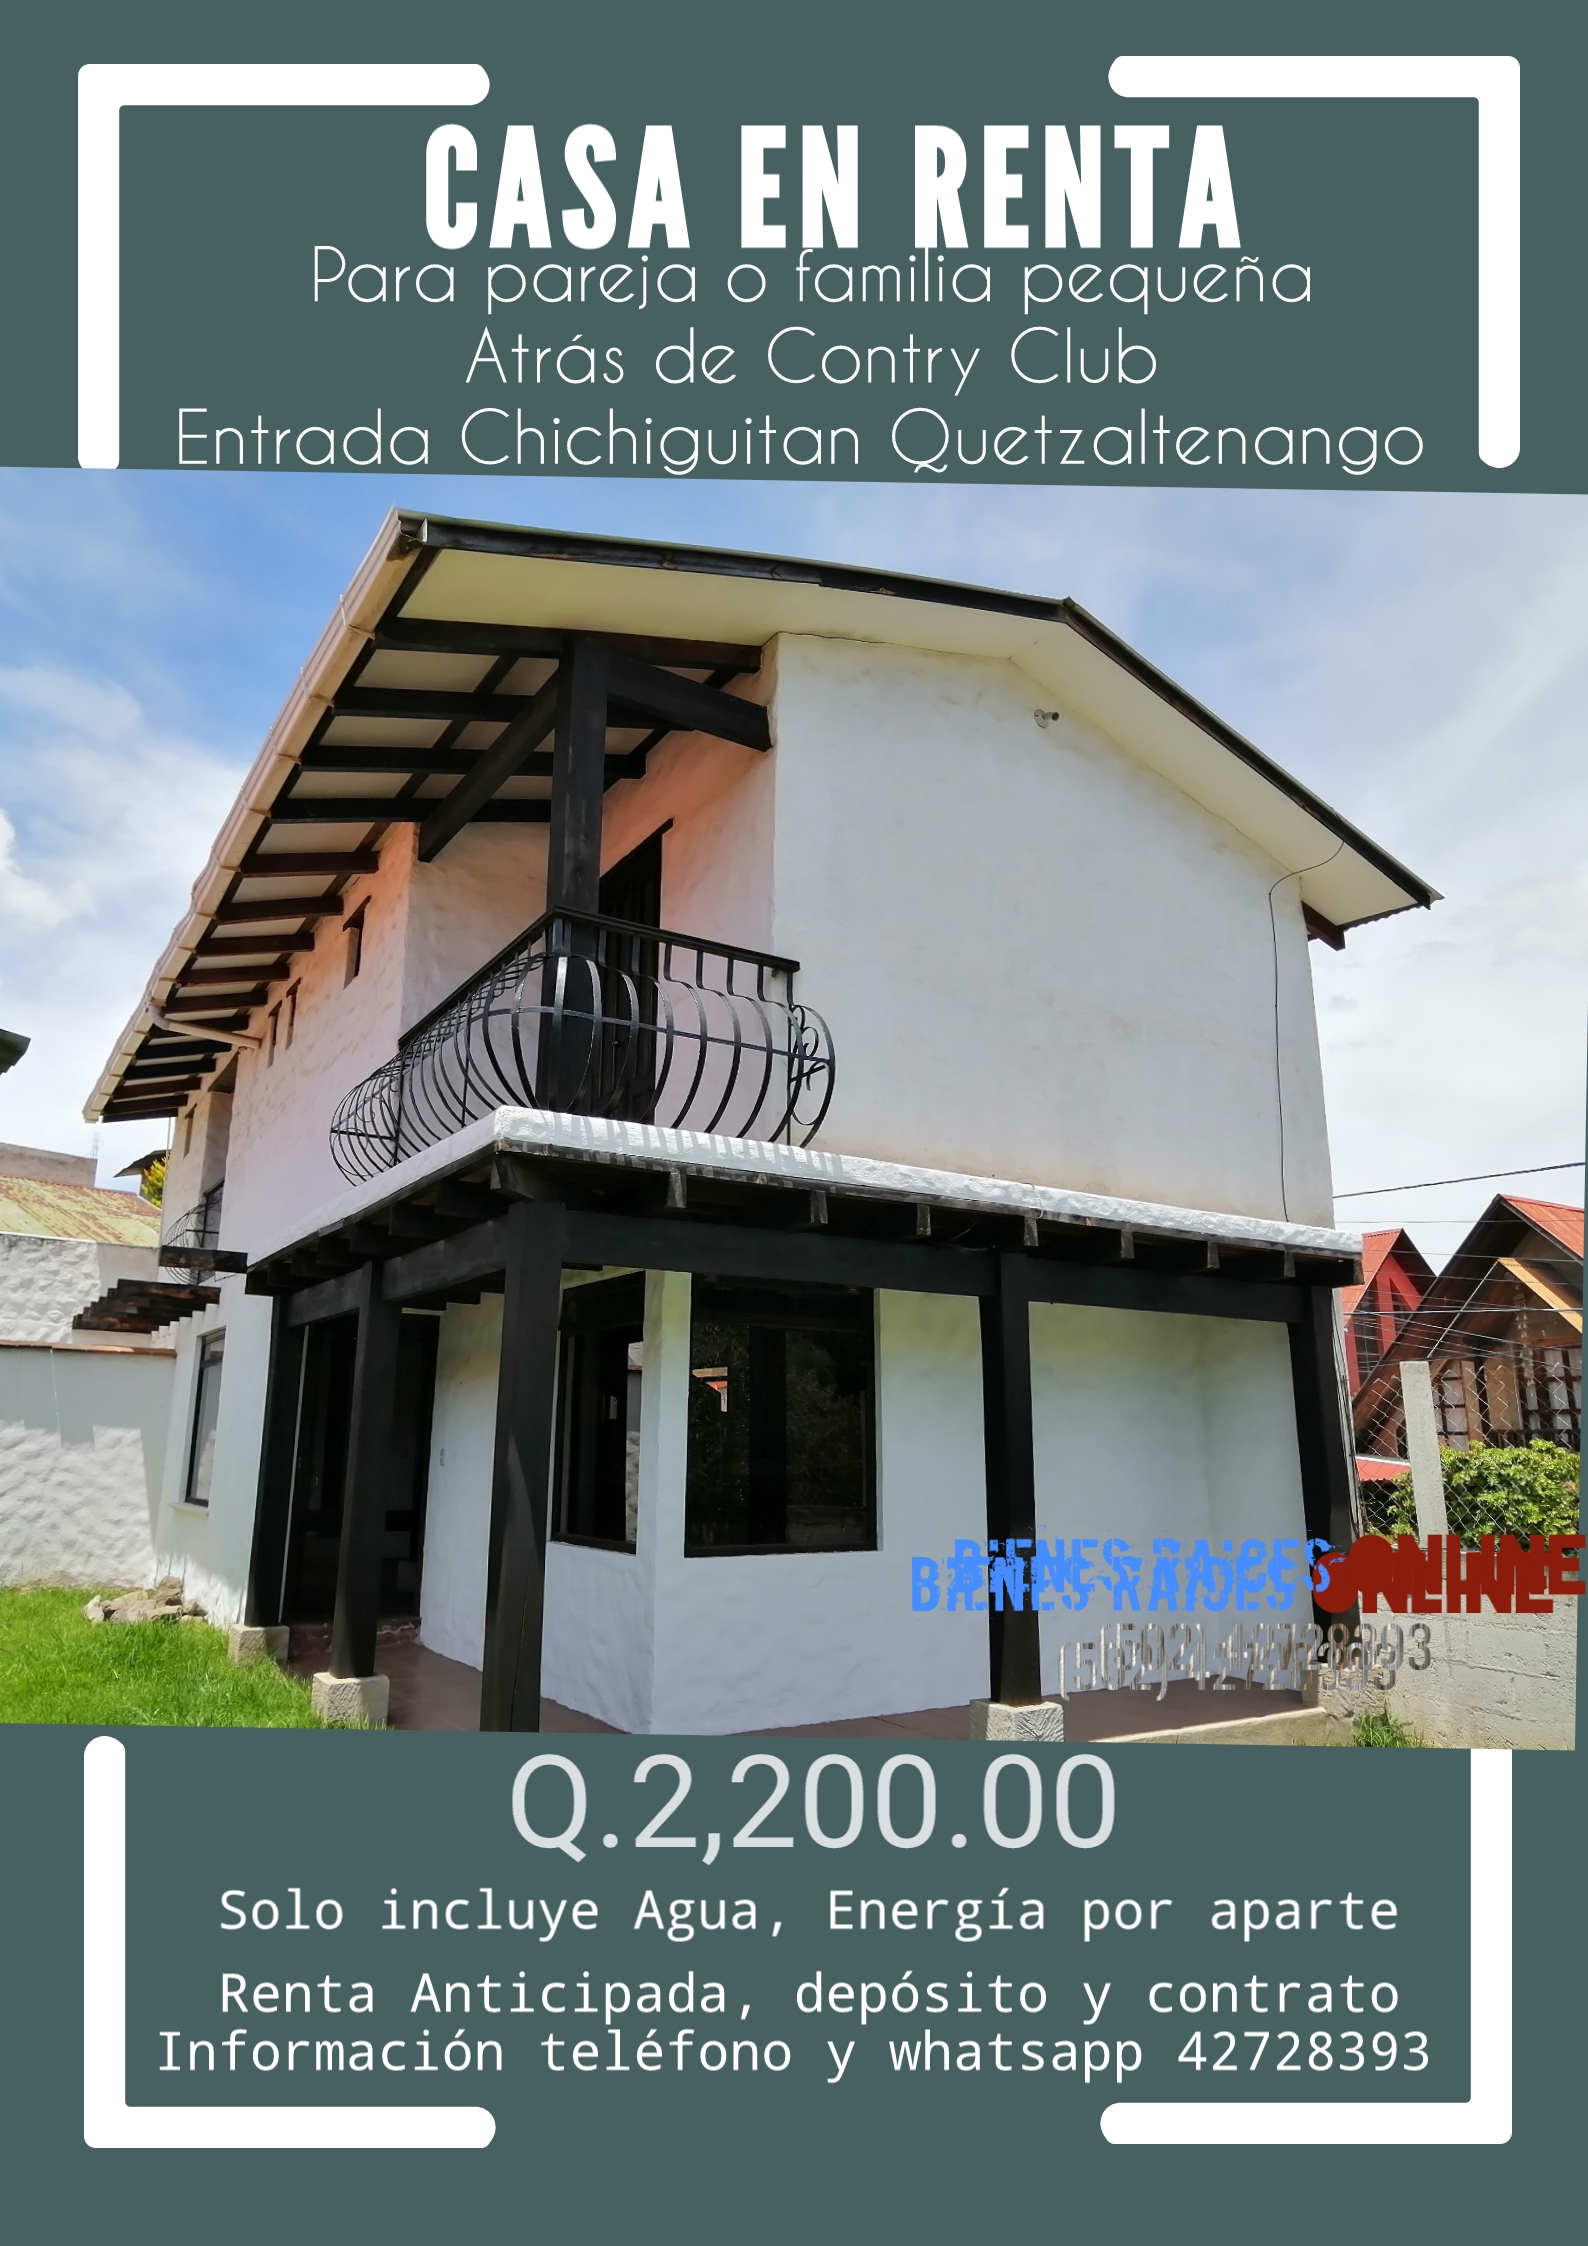 Casa en Renta para pareja por Chichiguitan Quetzaltenango